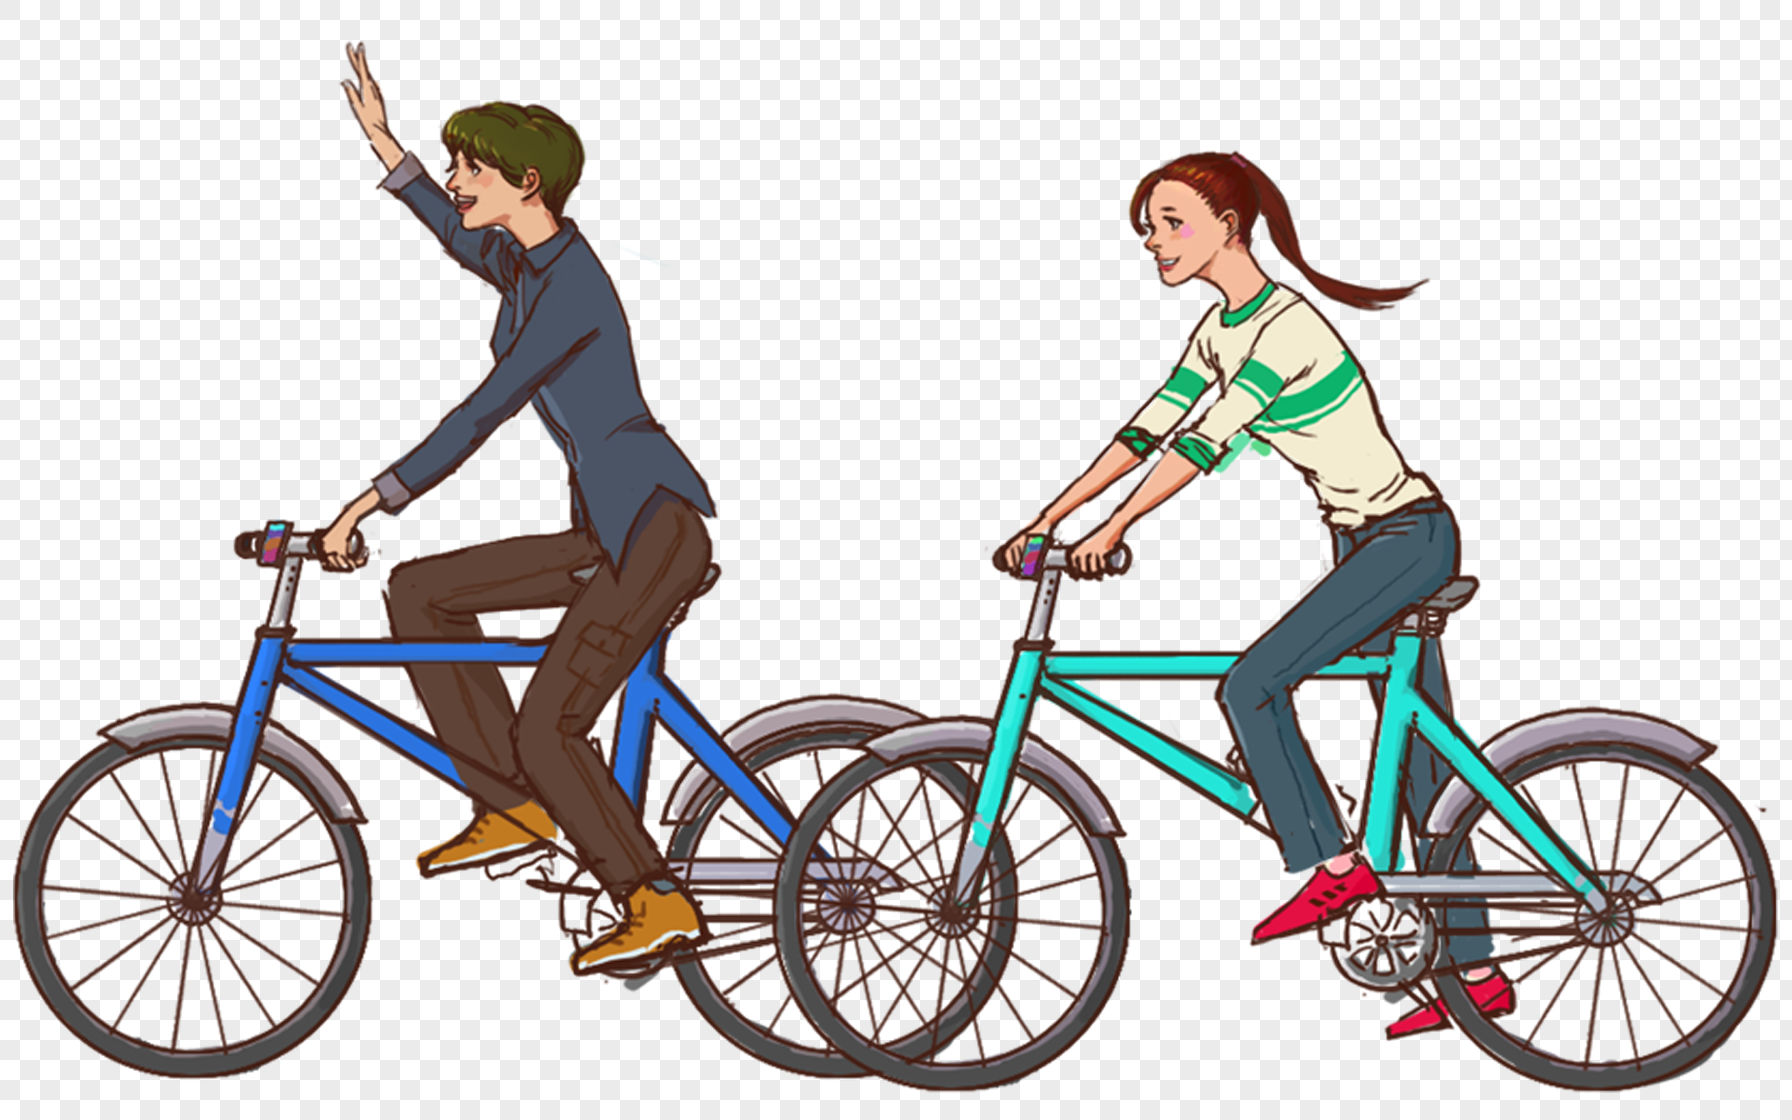 Чел на велосипеде иллюстрация